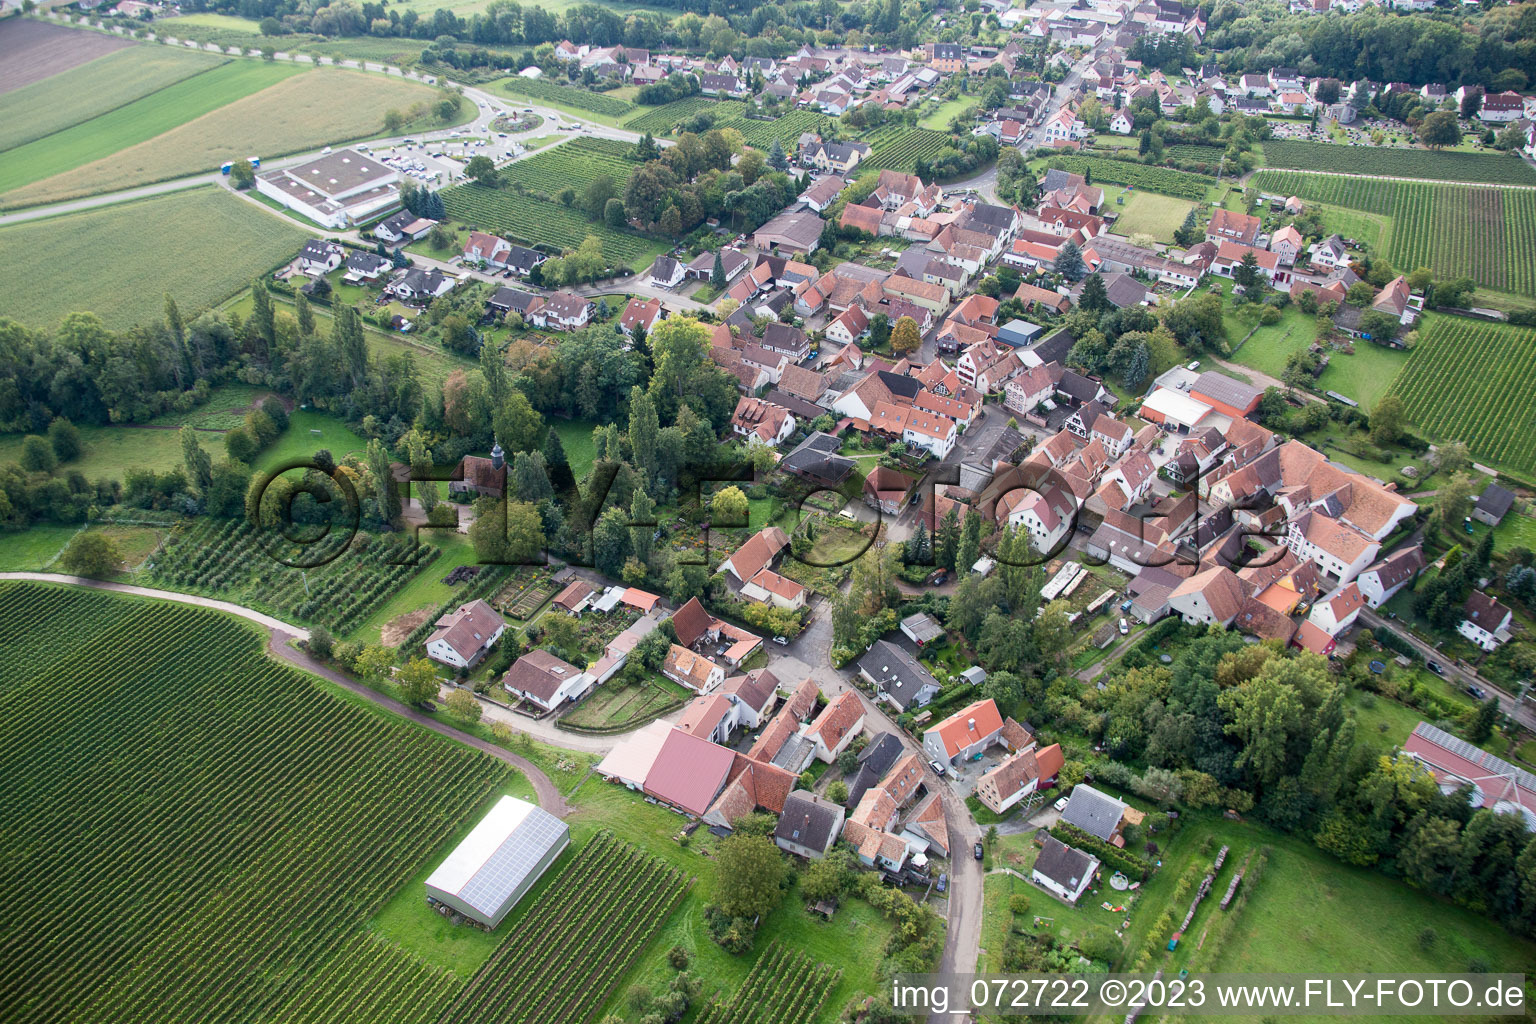 Oblique view of District Appenhofen in Billigheim-Ingenheim in the state Rhineland-Palatinate, Germany